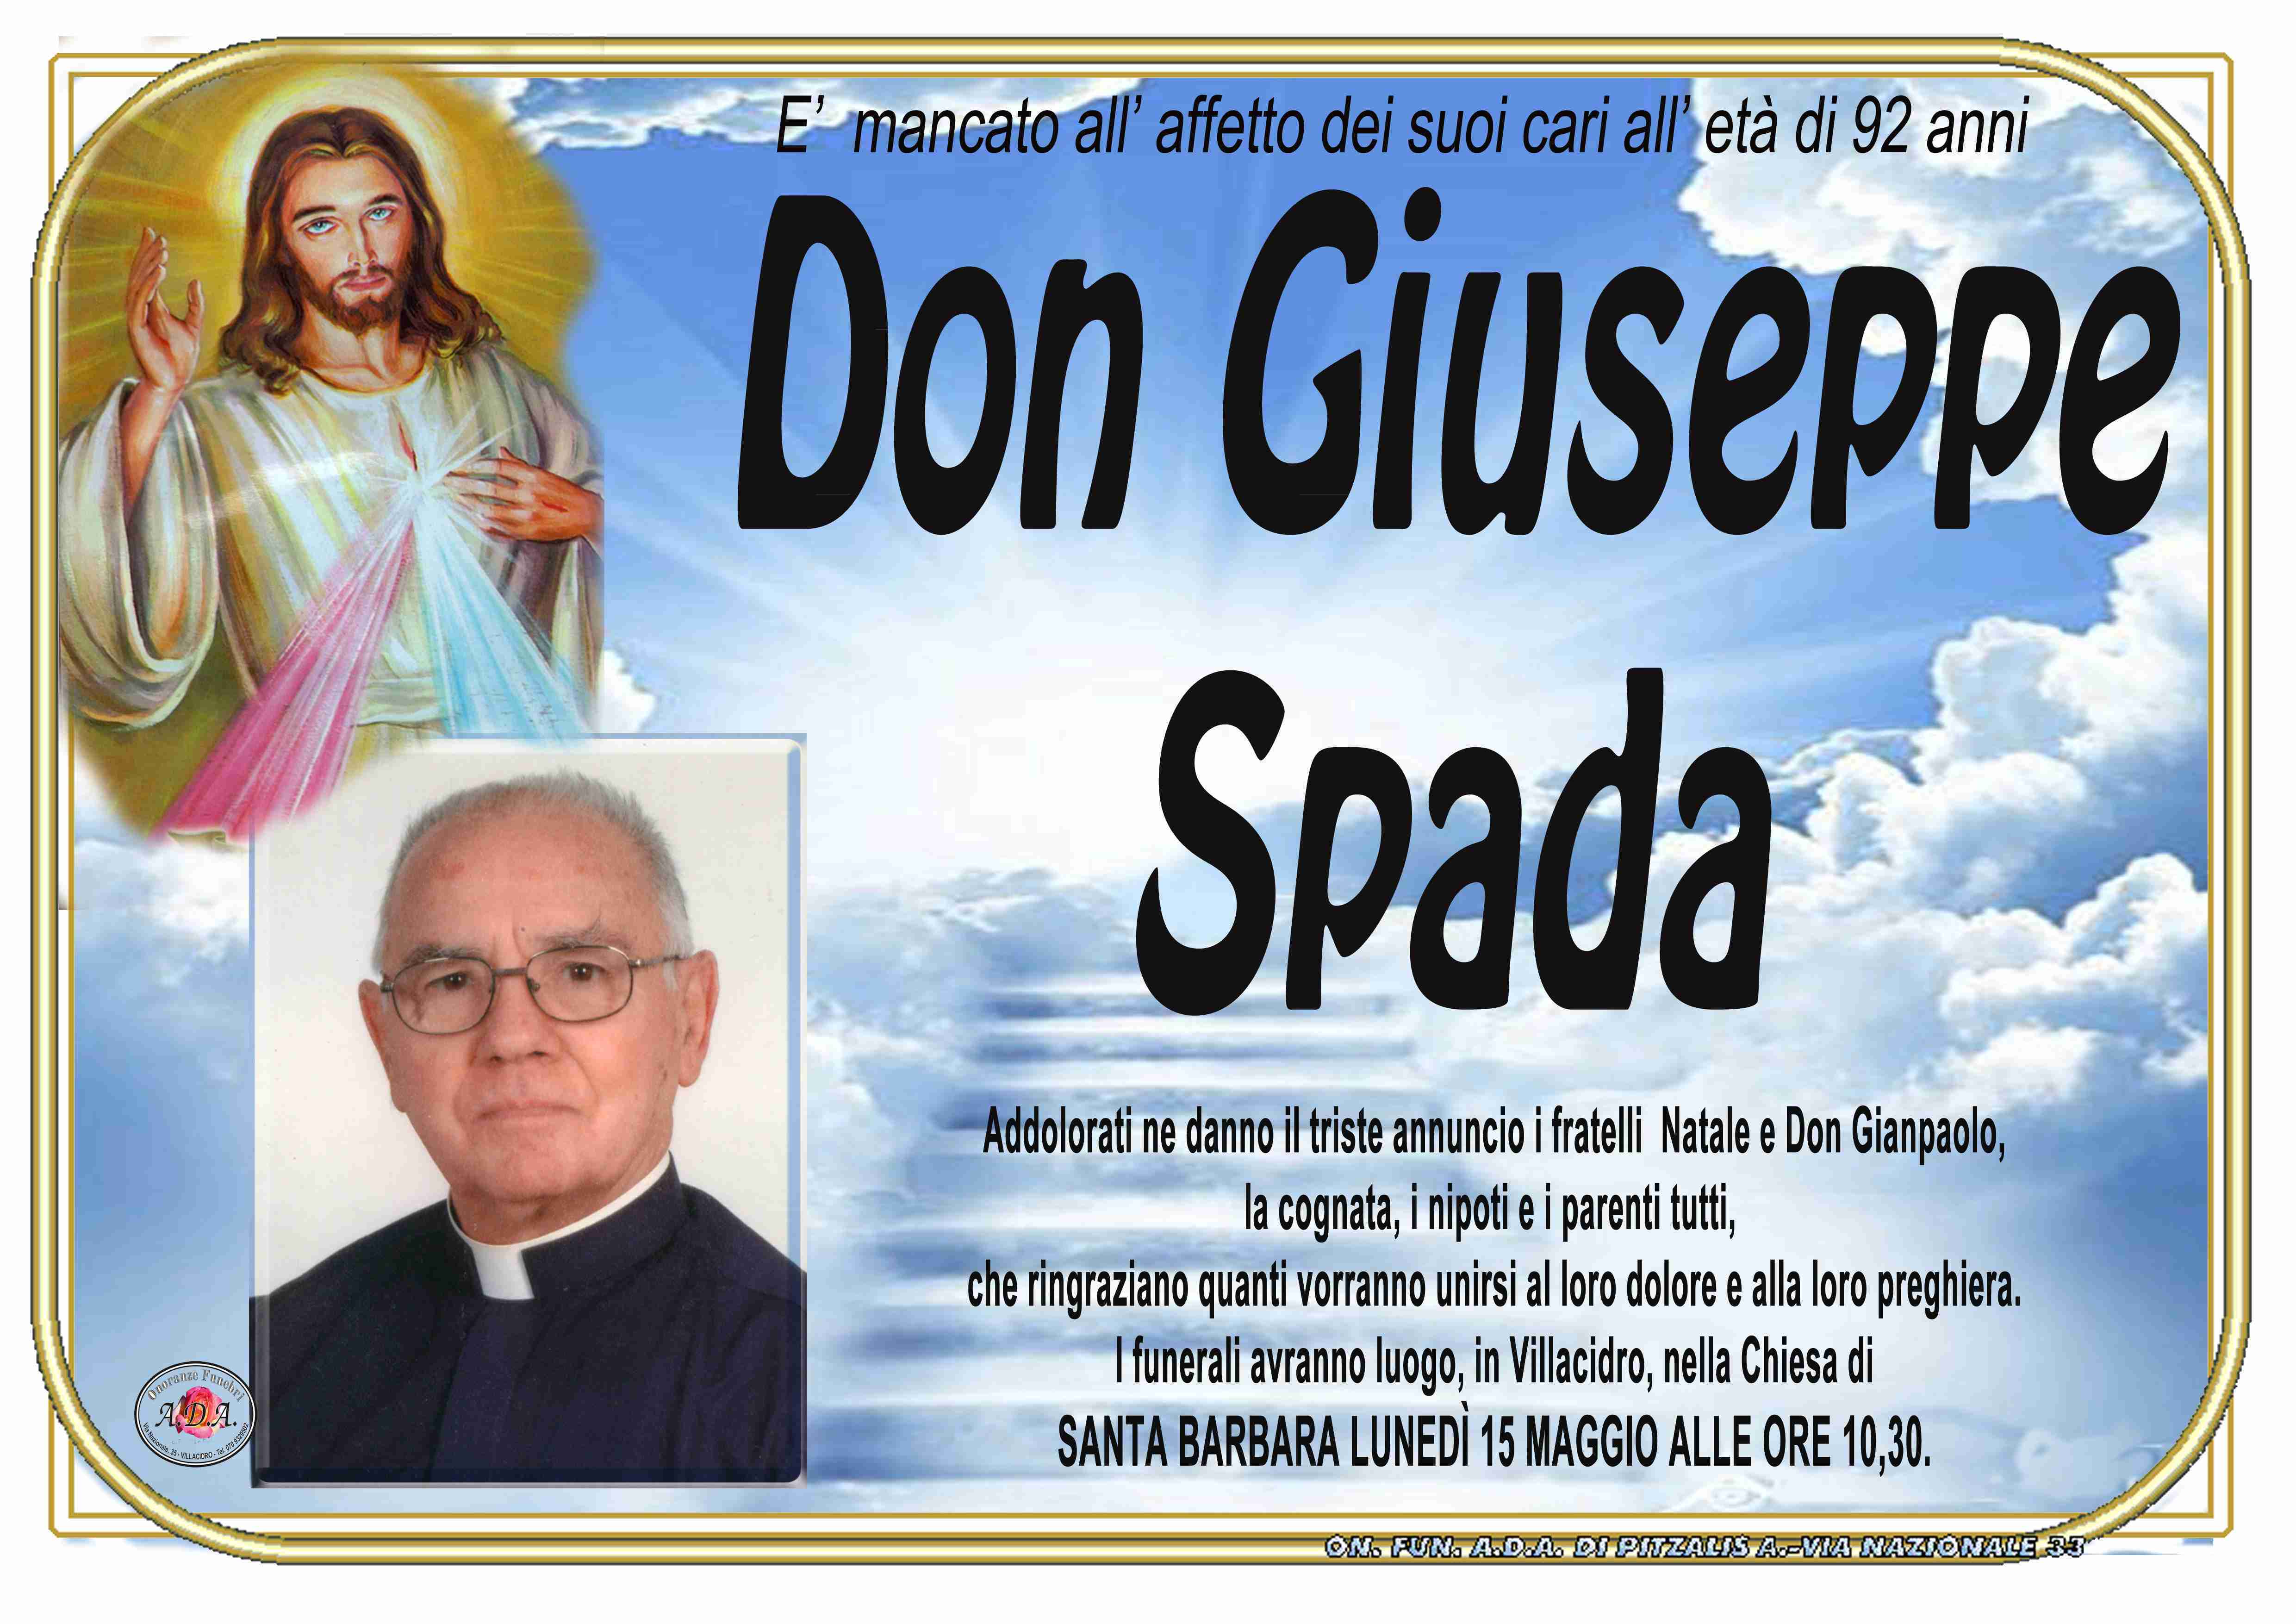 Don Giuseppe Spada